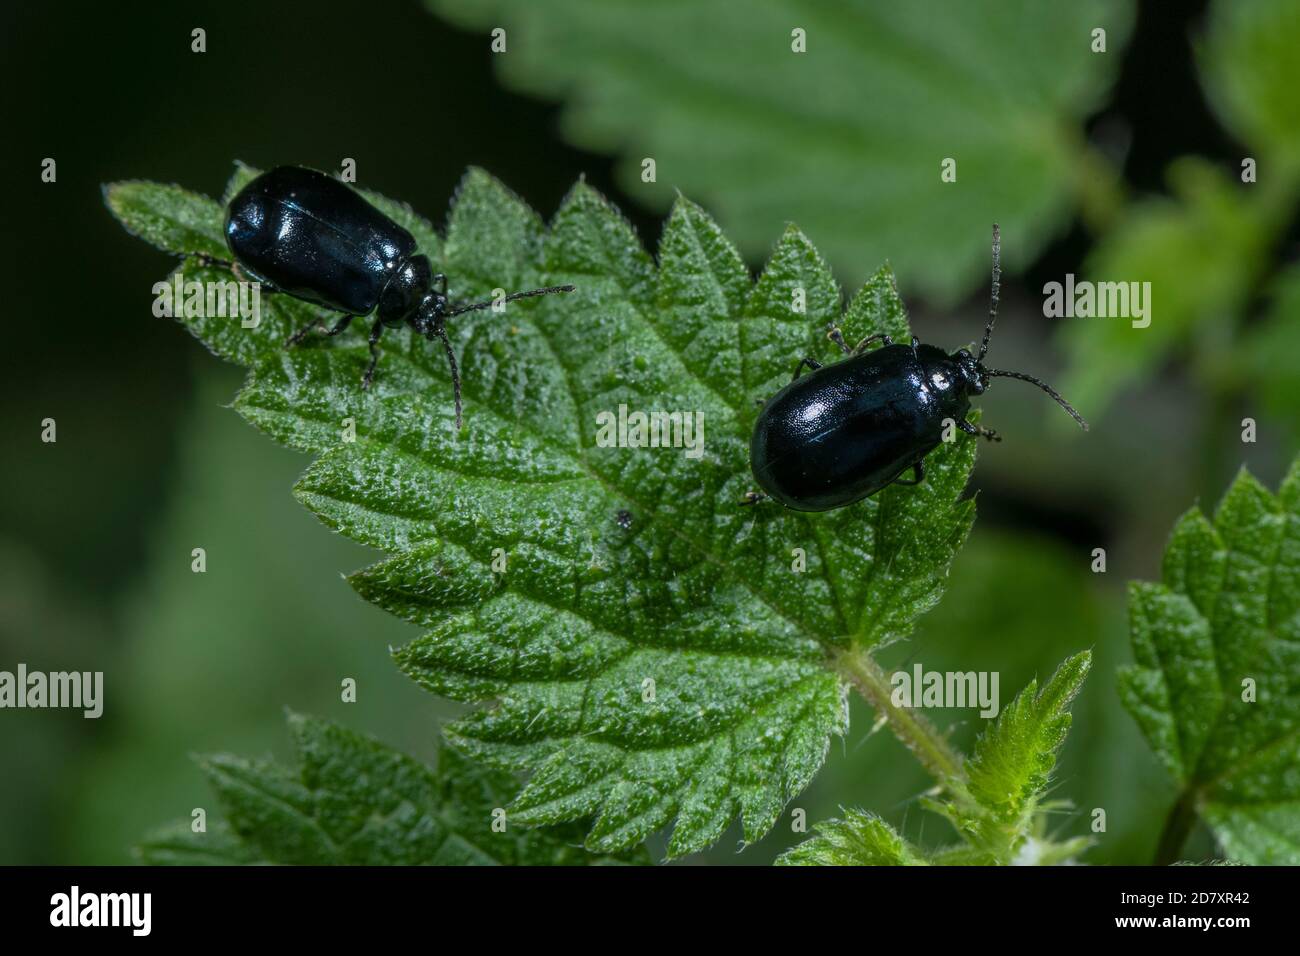 Alder leaf beetles, Agelastica alni,  on the leaves of Alder, Alnus glutinosa. Stock Photo